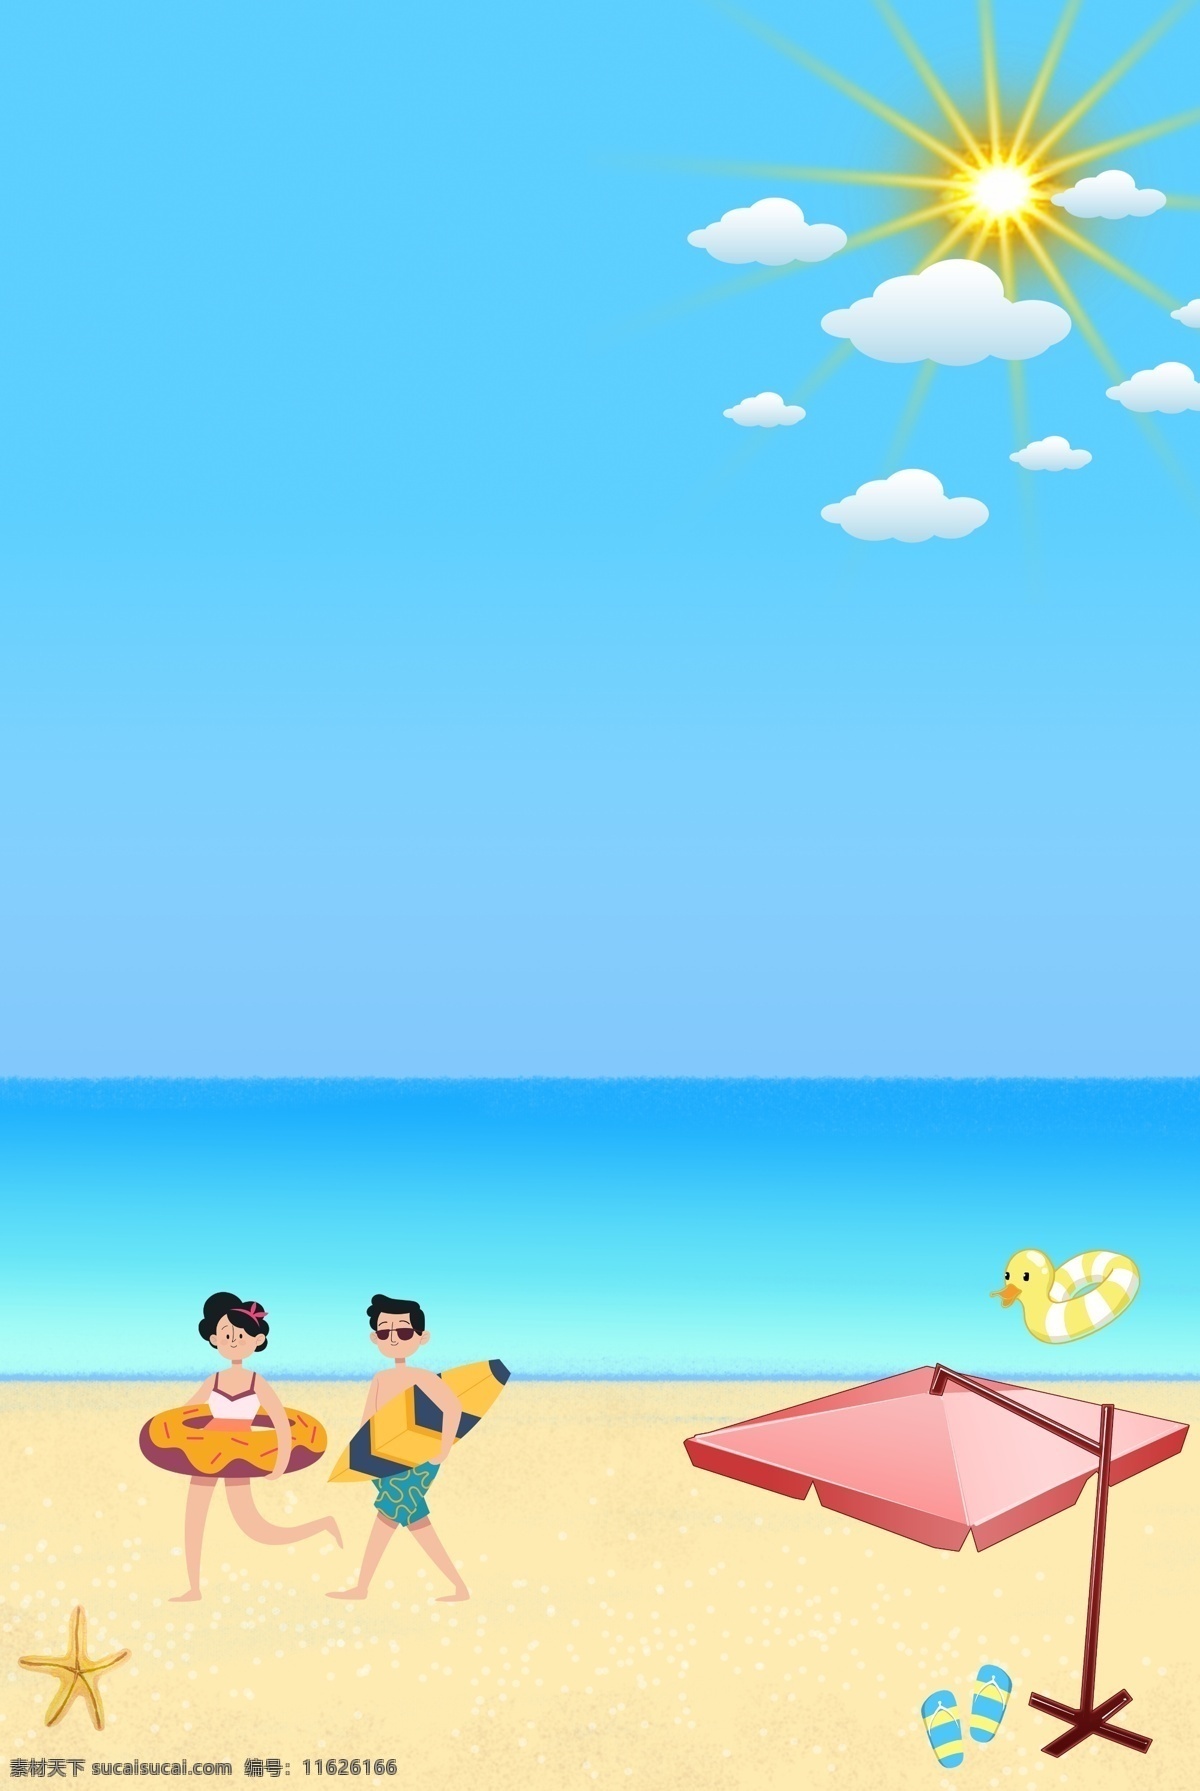 清爽 夏日 海滩 游玩 背景 人 白云 蓝天 太阳 沙滩 海星 游泳圈 拖鞋 伞 大海